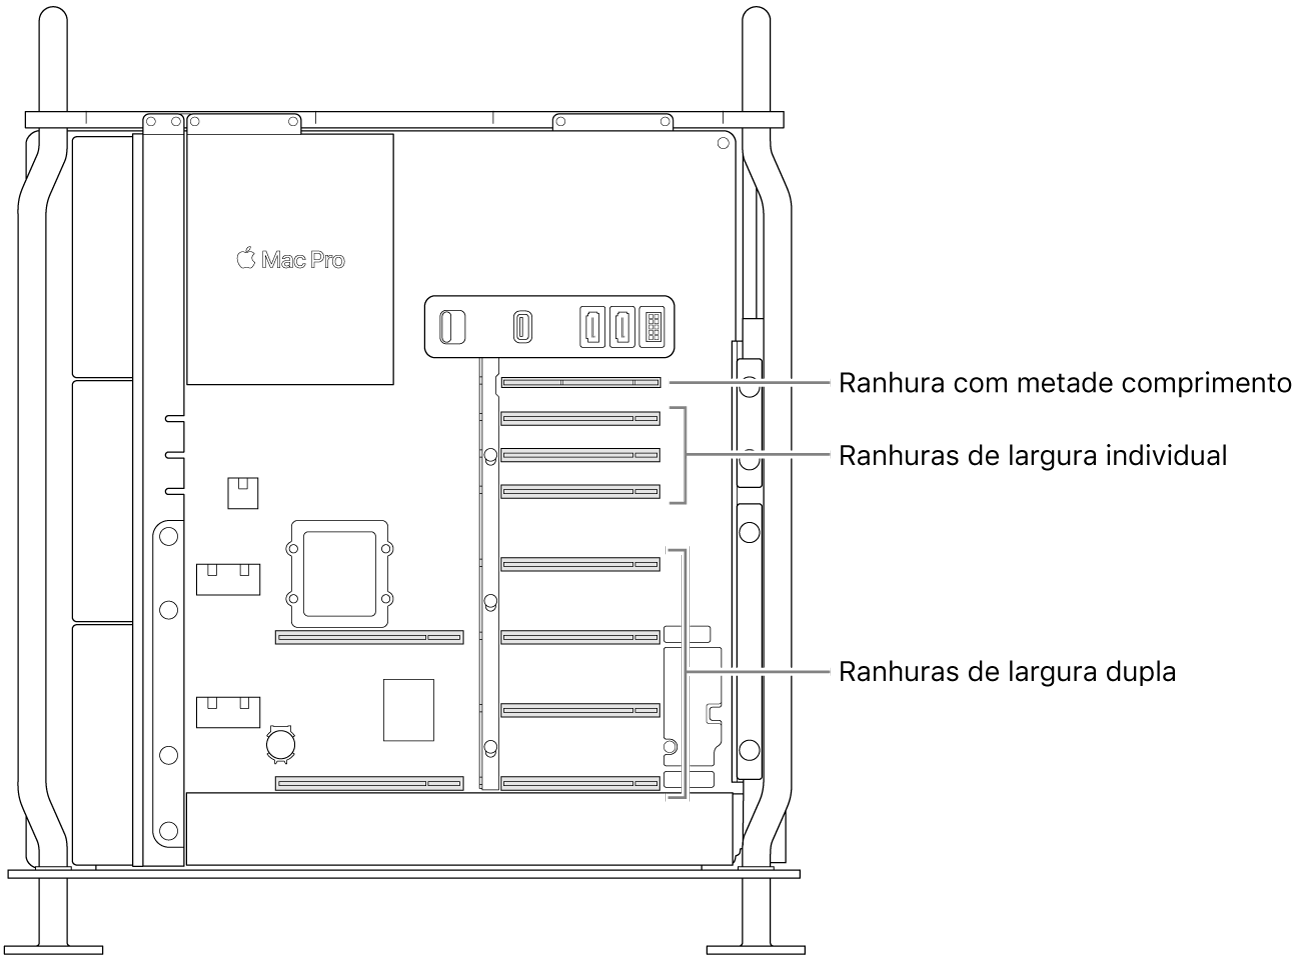 A lateral do Mac Pro aberta com indicações que mostram onde estão localizadas as quatro ranhuras de largura dupla, as três ranhuras de largura individual e a ranhura com metade do comprimento.